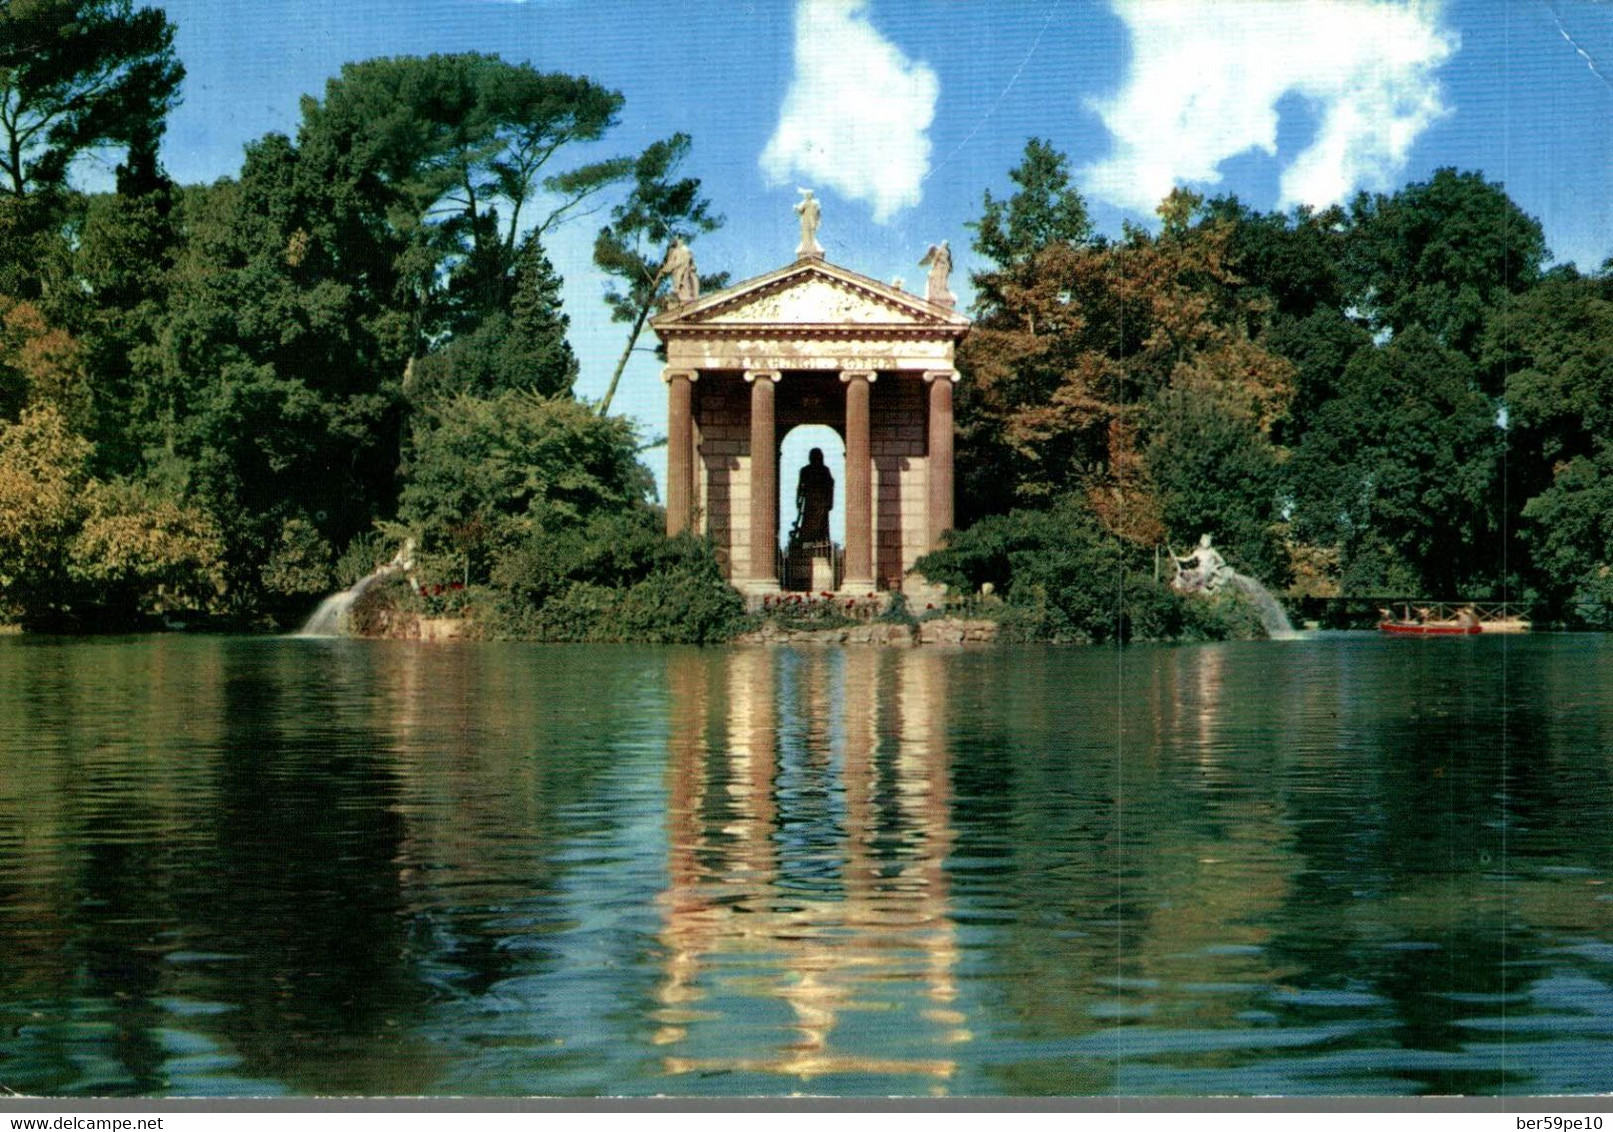 ITALIE ROMA VILLA BORGHESE IL GIARDINO DEL LAGO  LE JARDIN DU LAC - Parks & Gardens